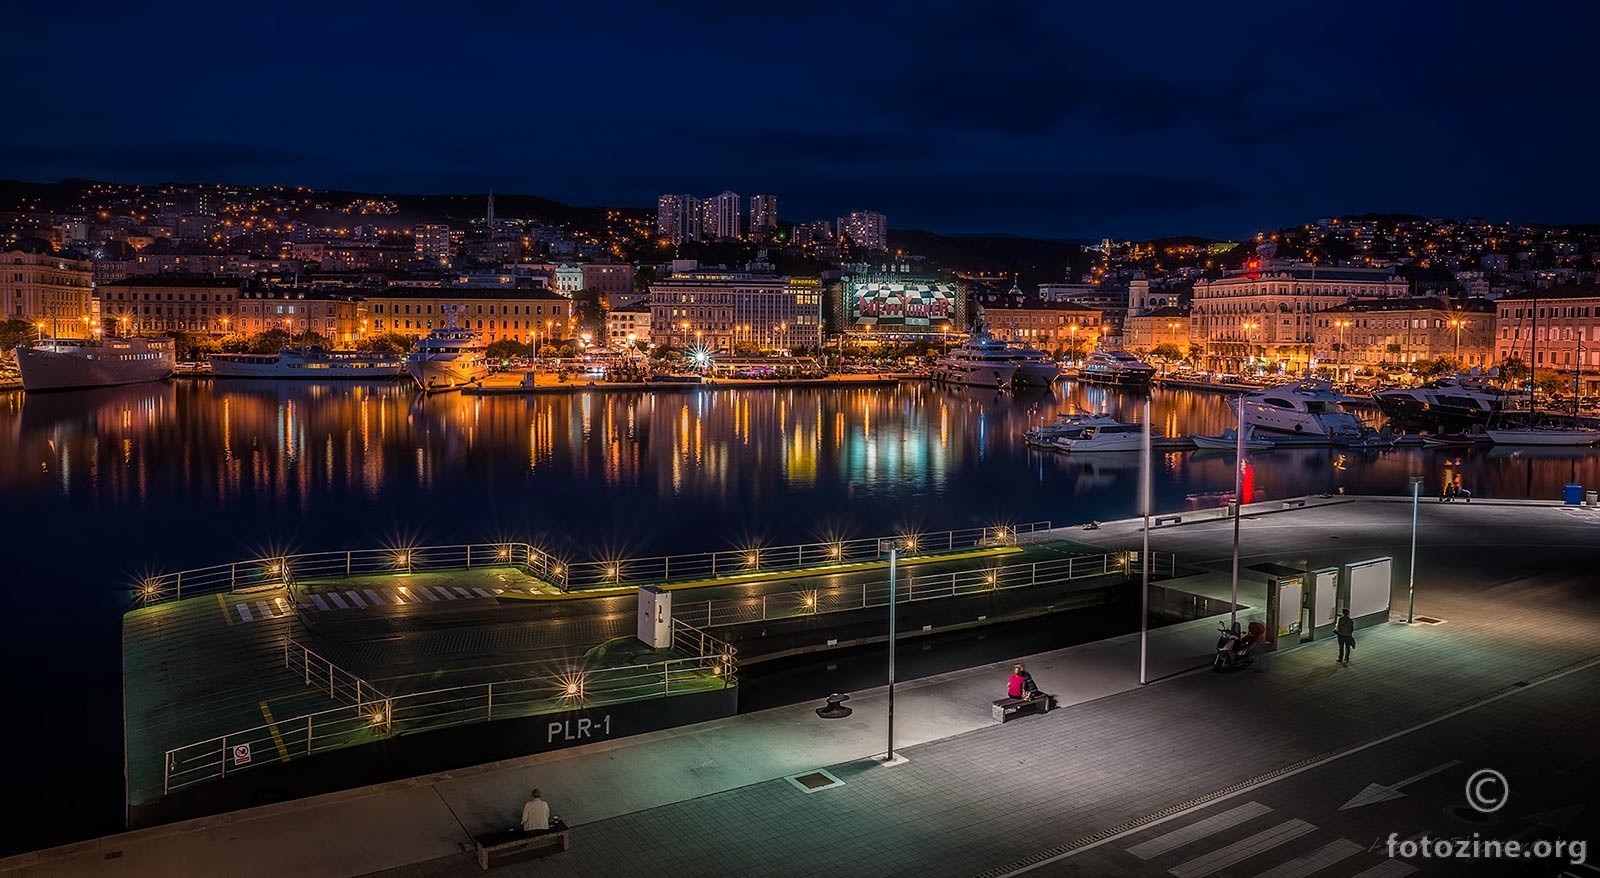 Rijeka at night....